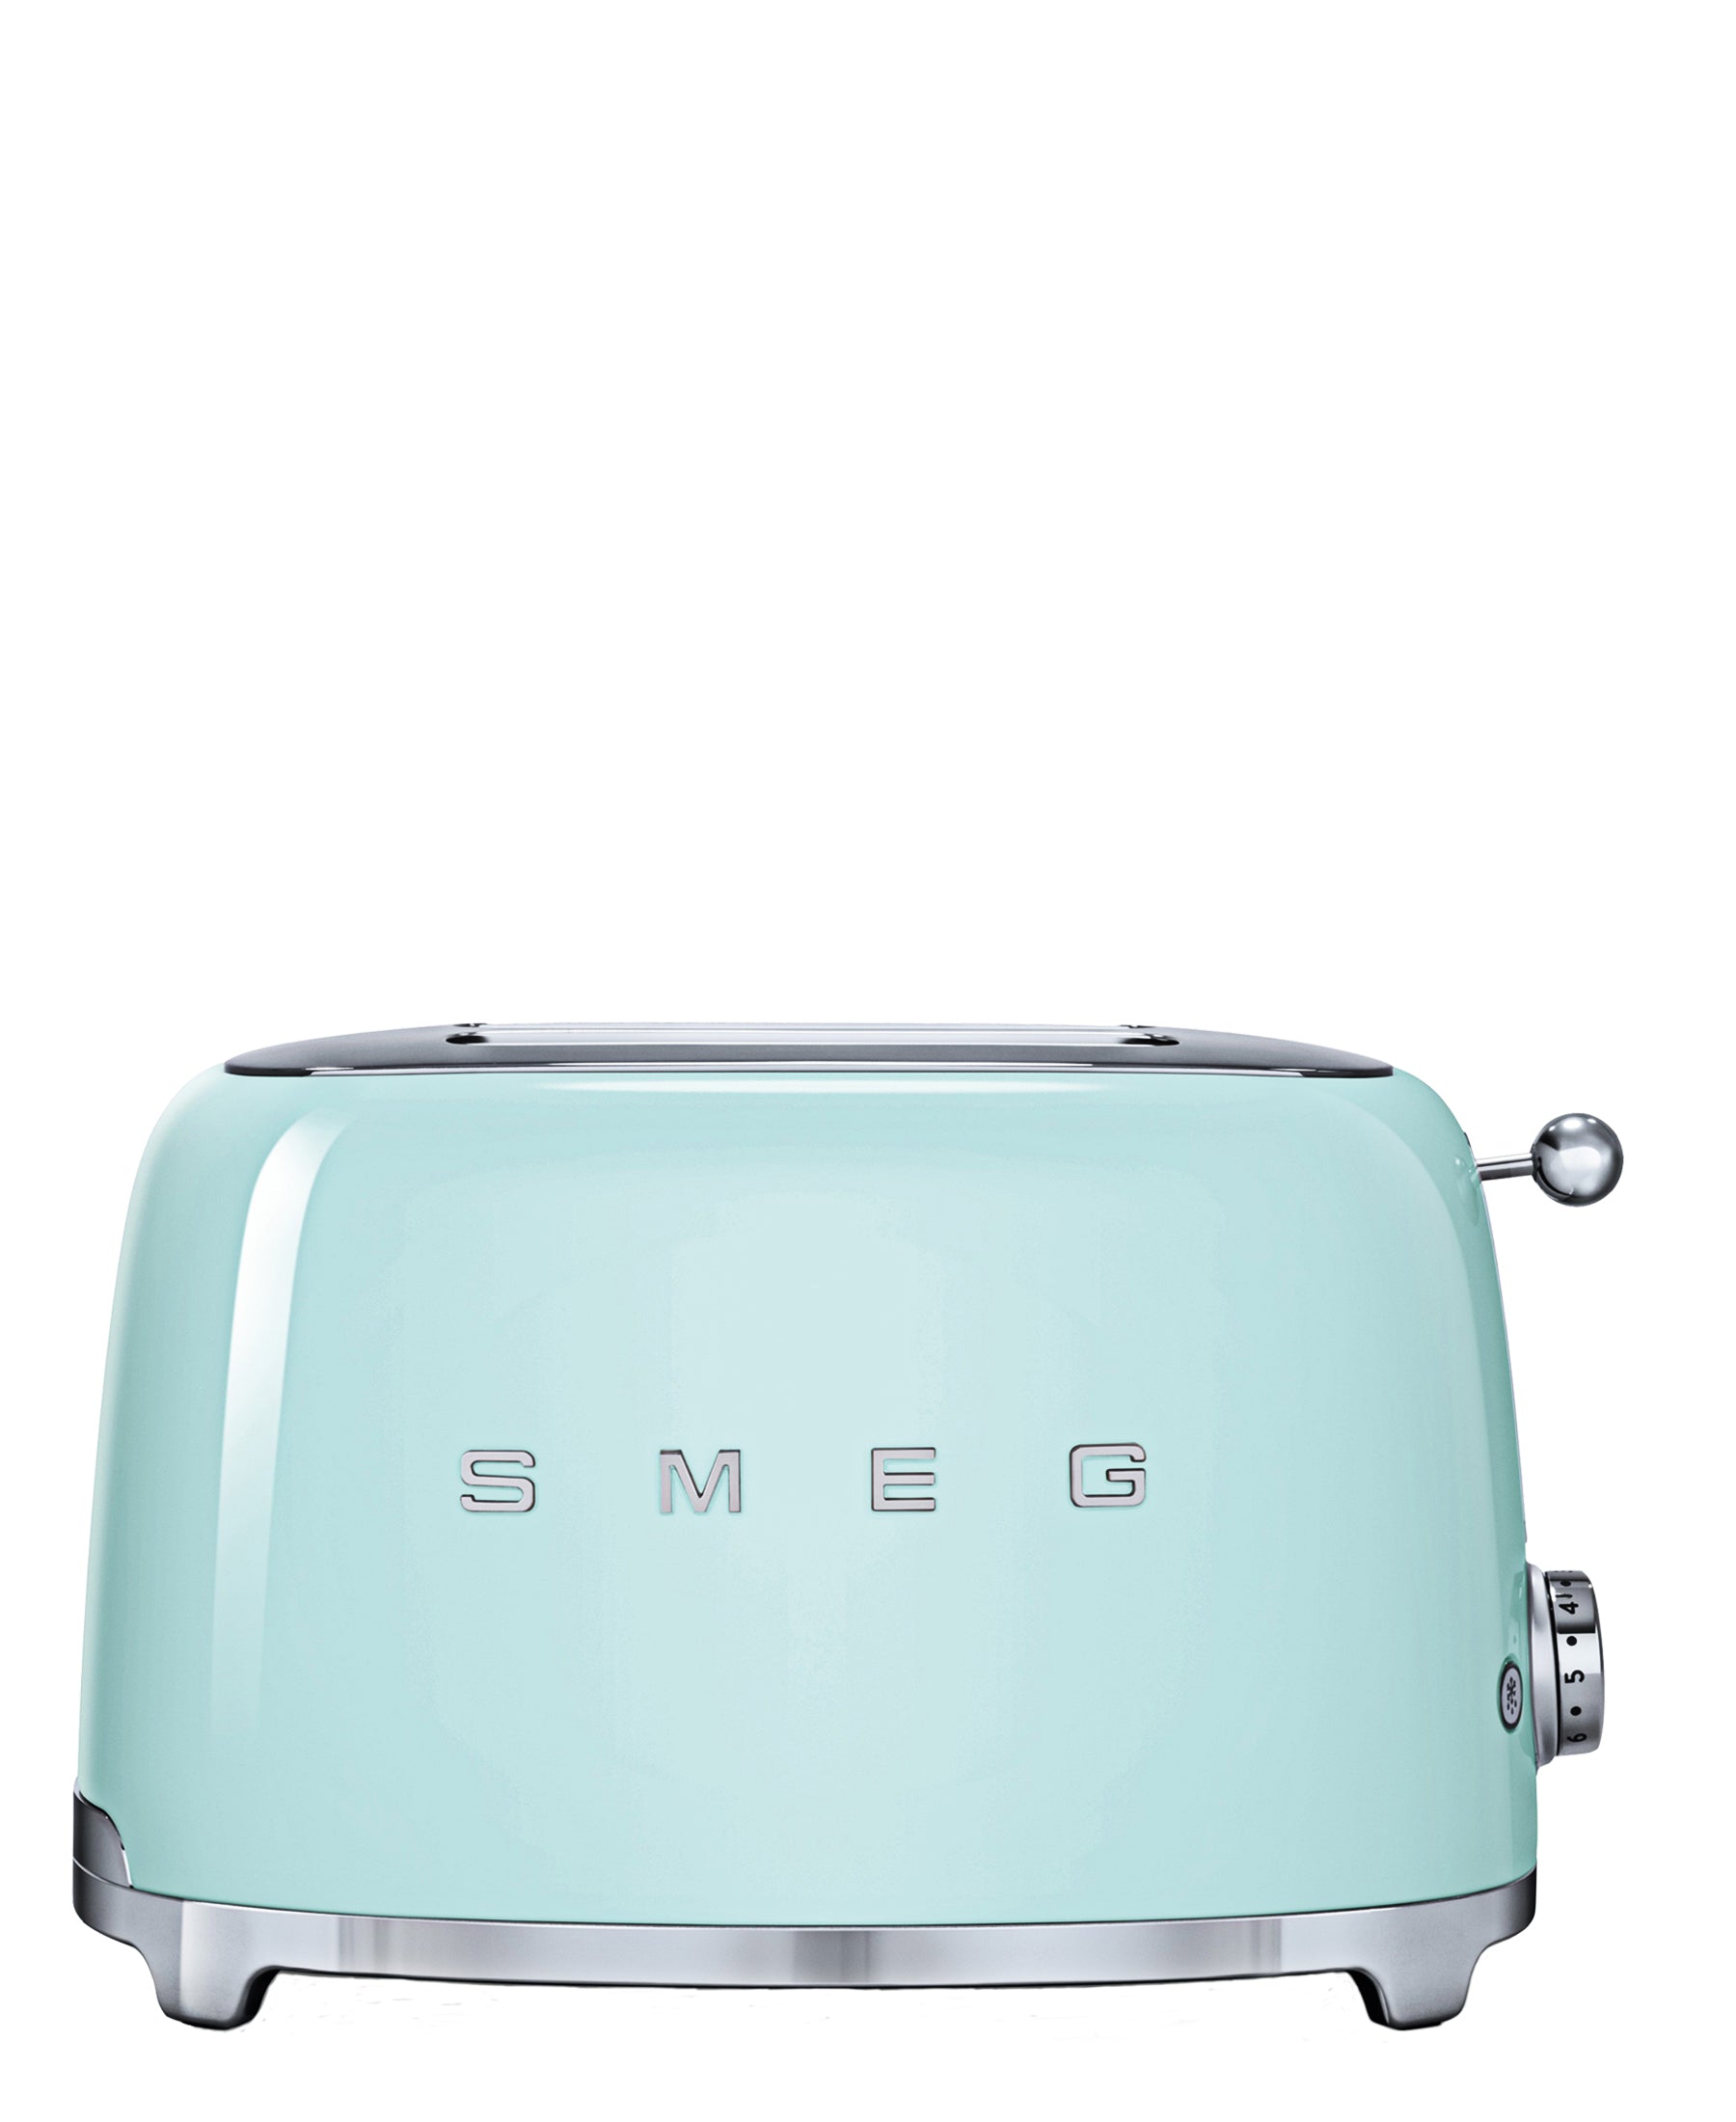 Smeg Retro 4 Slice Toaster - Pastel Green